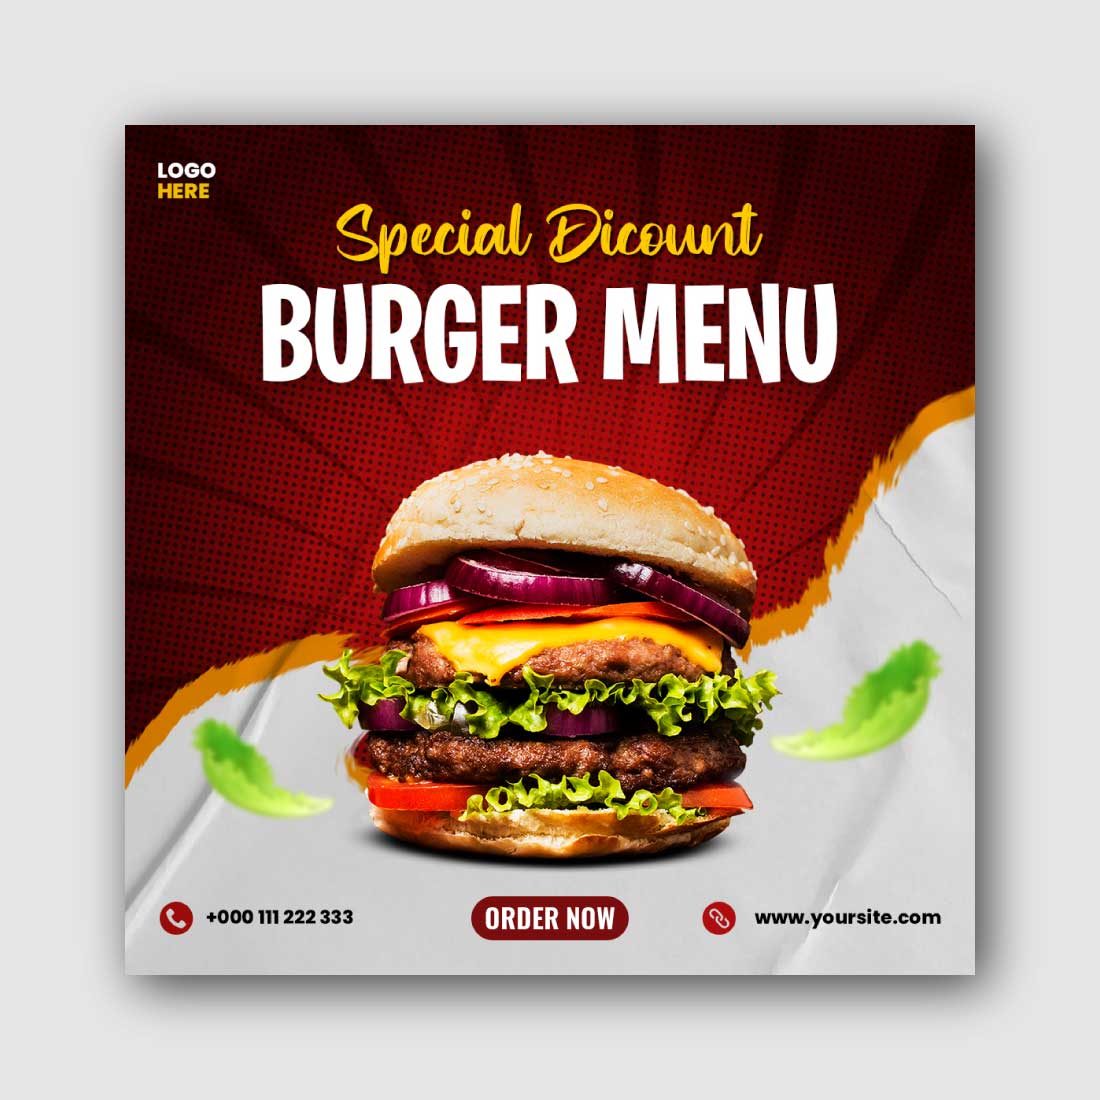 Burger menu Social Media Instagram Post Template cover image.